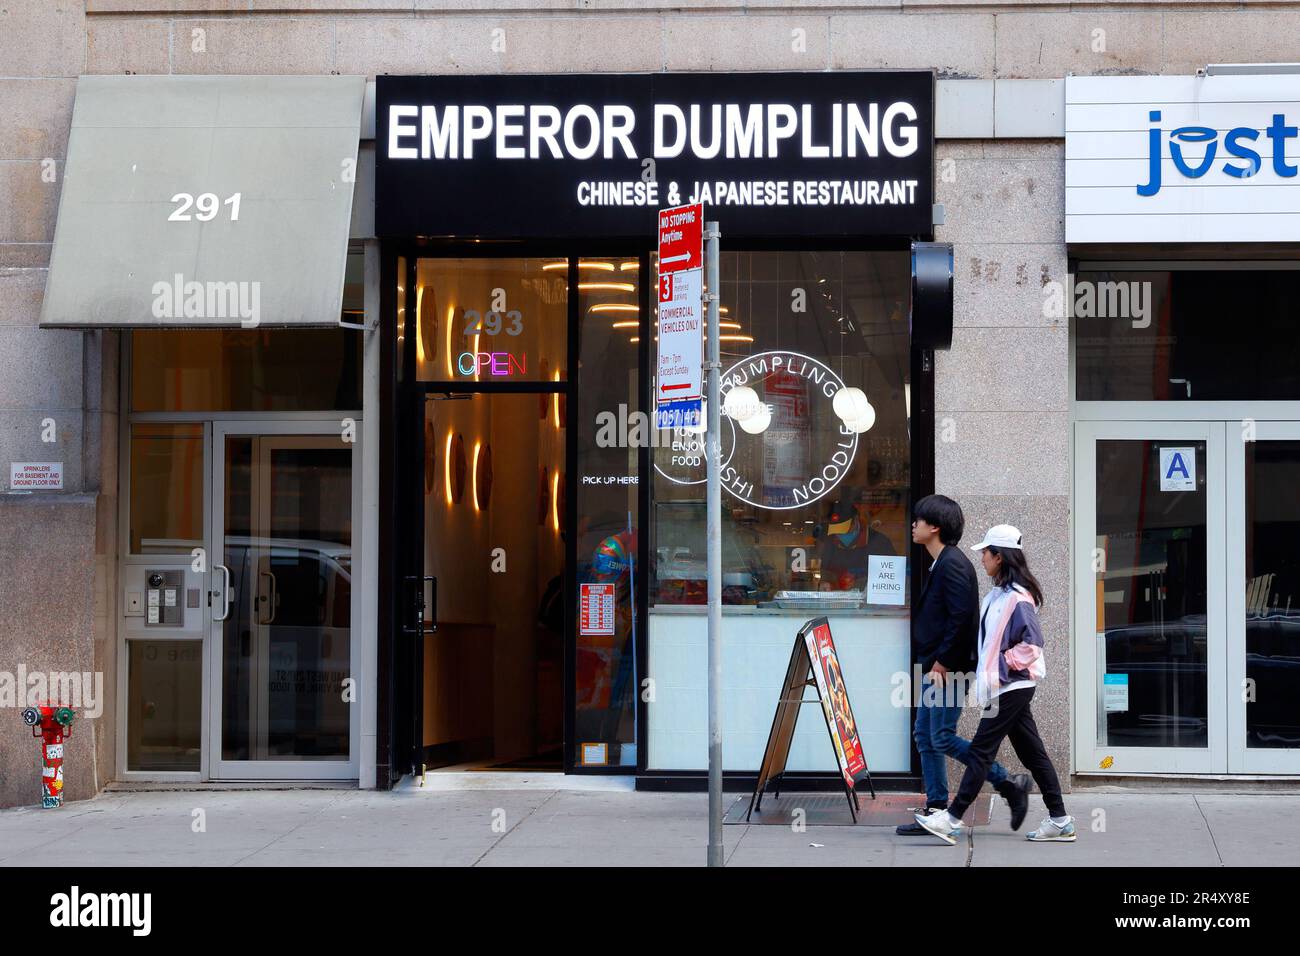 Emperor Dumpling, 293 7th Ave, New York, foto del negozio di New York di un ristorante cinese a manubri nel quartiere Chelsea di Manhattan. Foto Stock